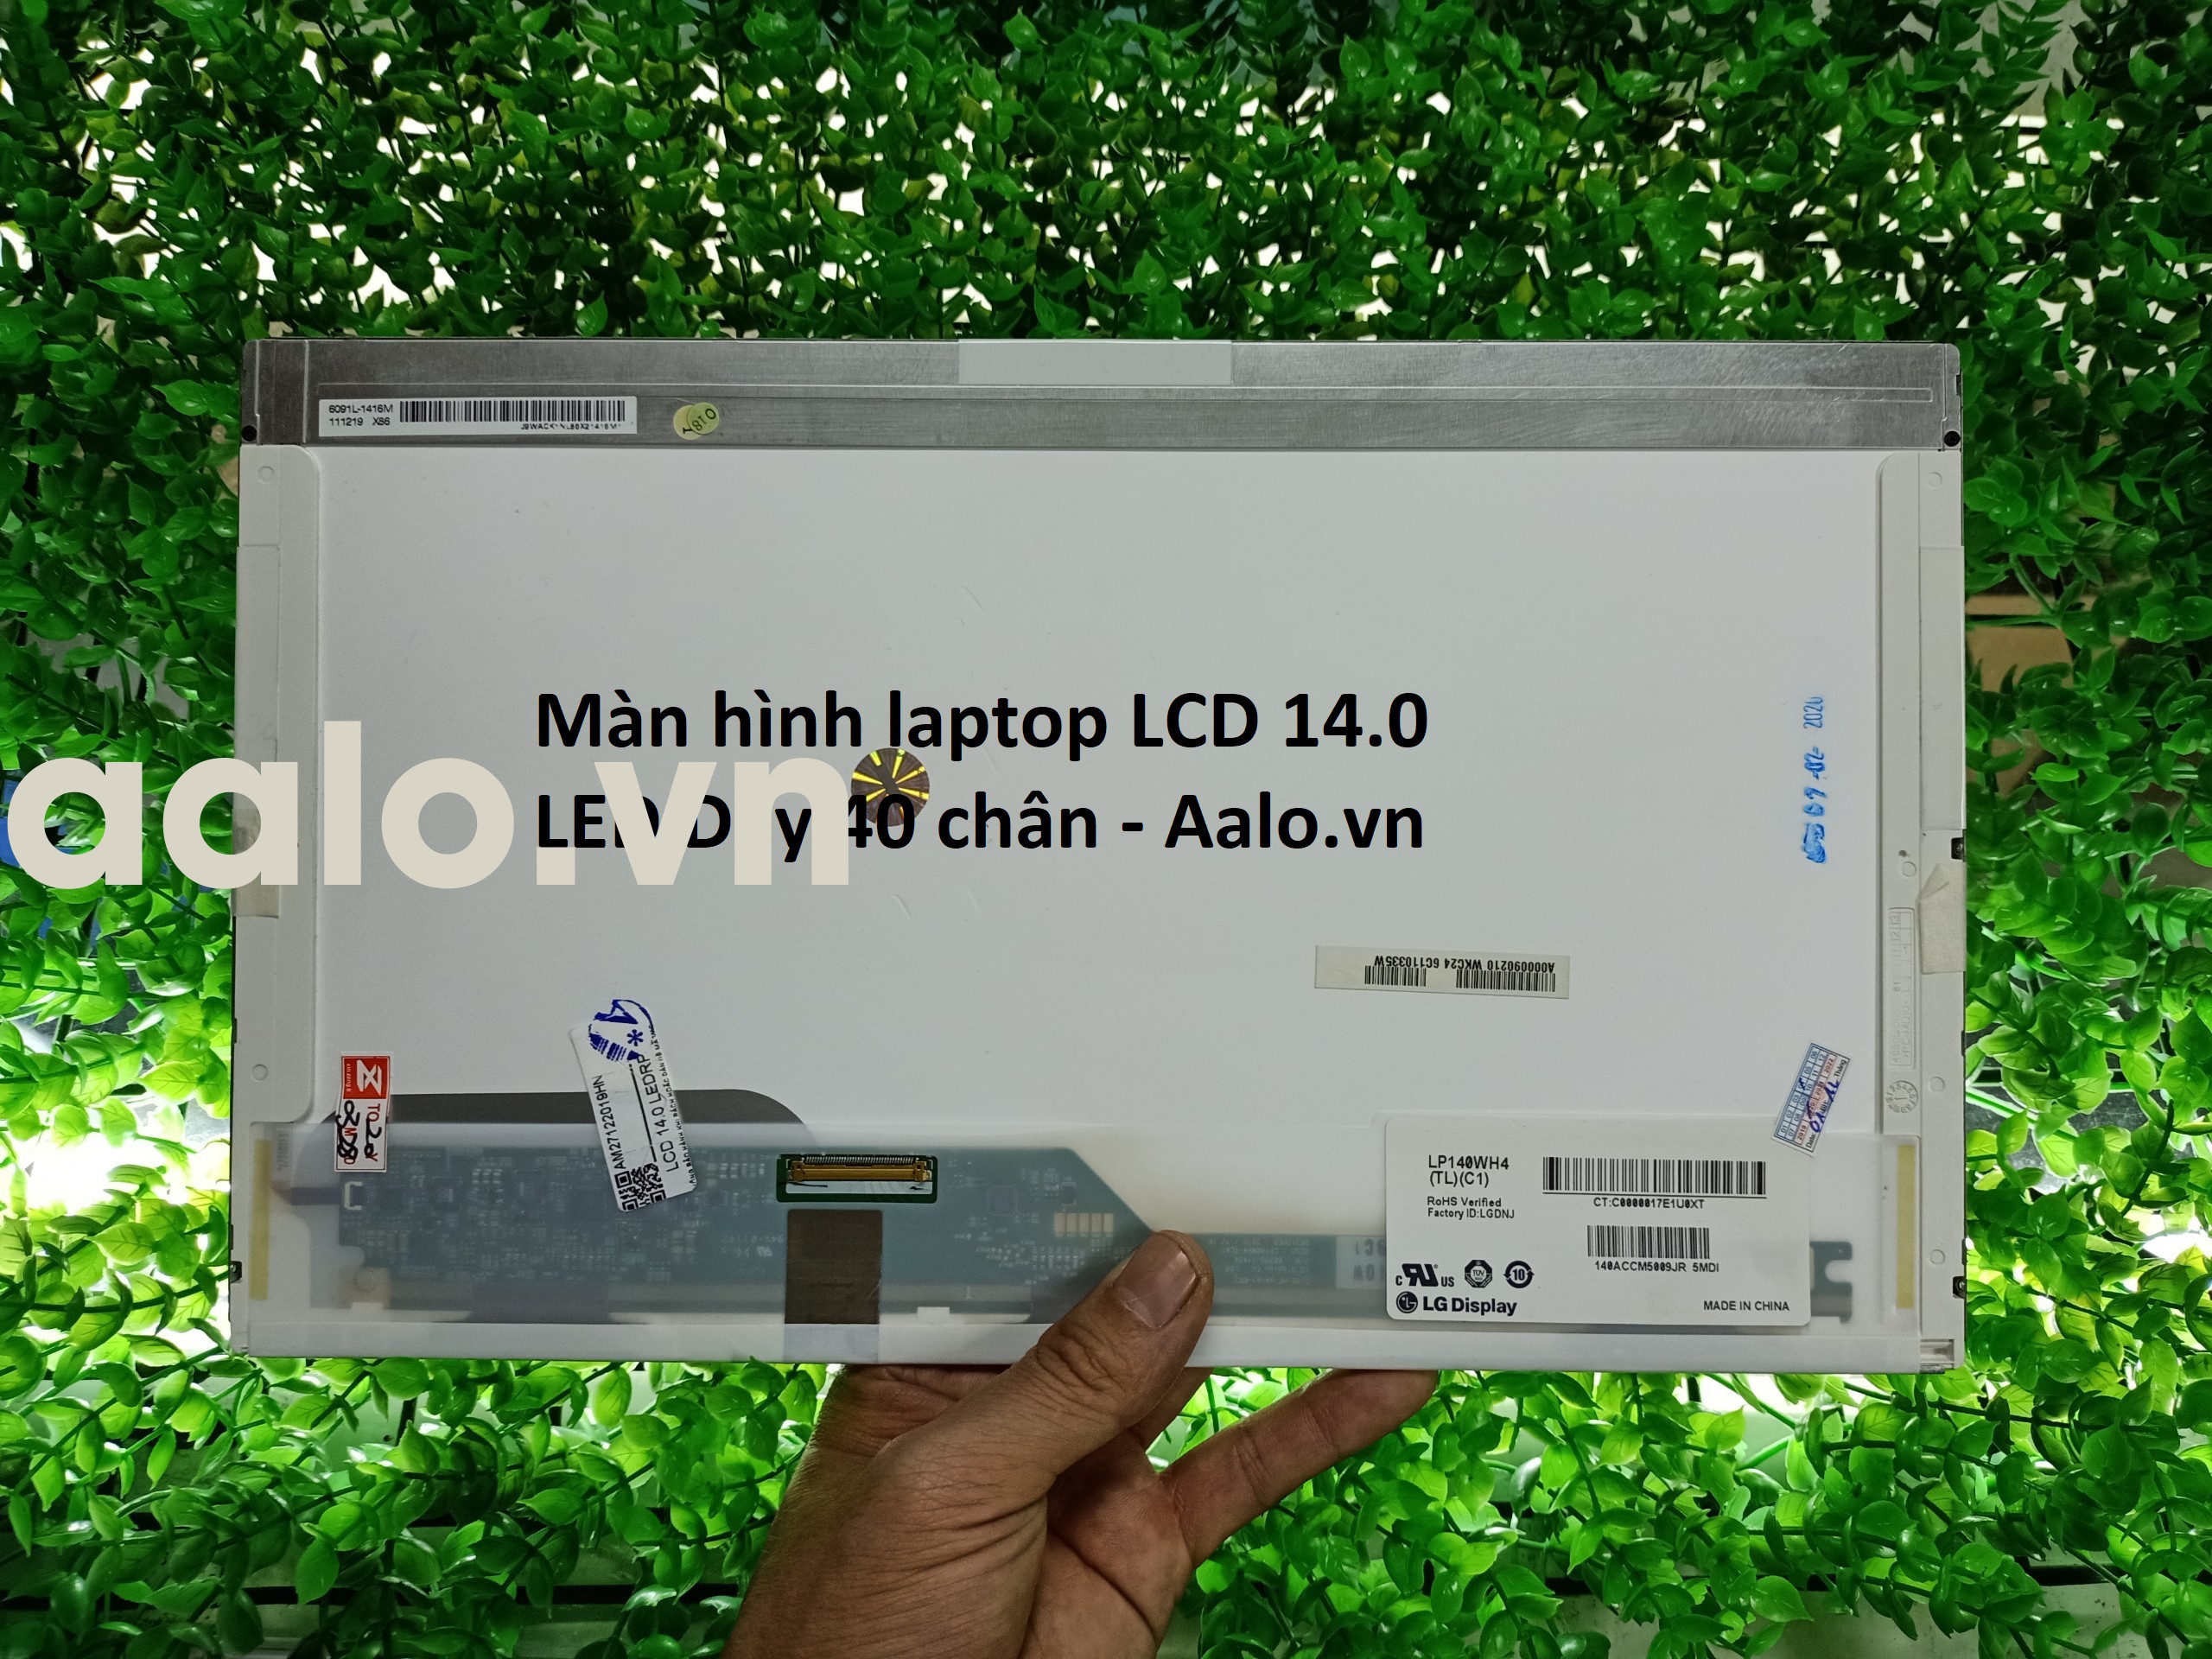 Màn hình laptop LCD 14.0 LED Dày 40 chân